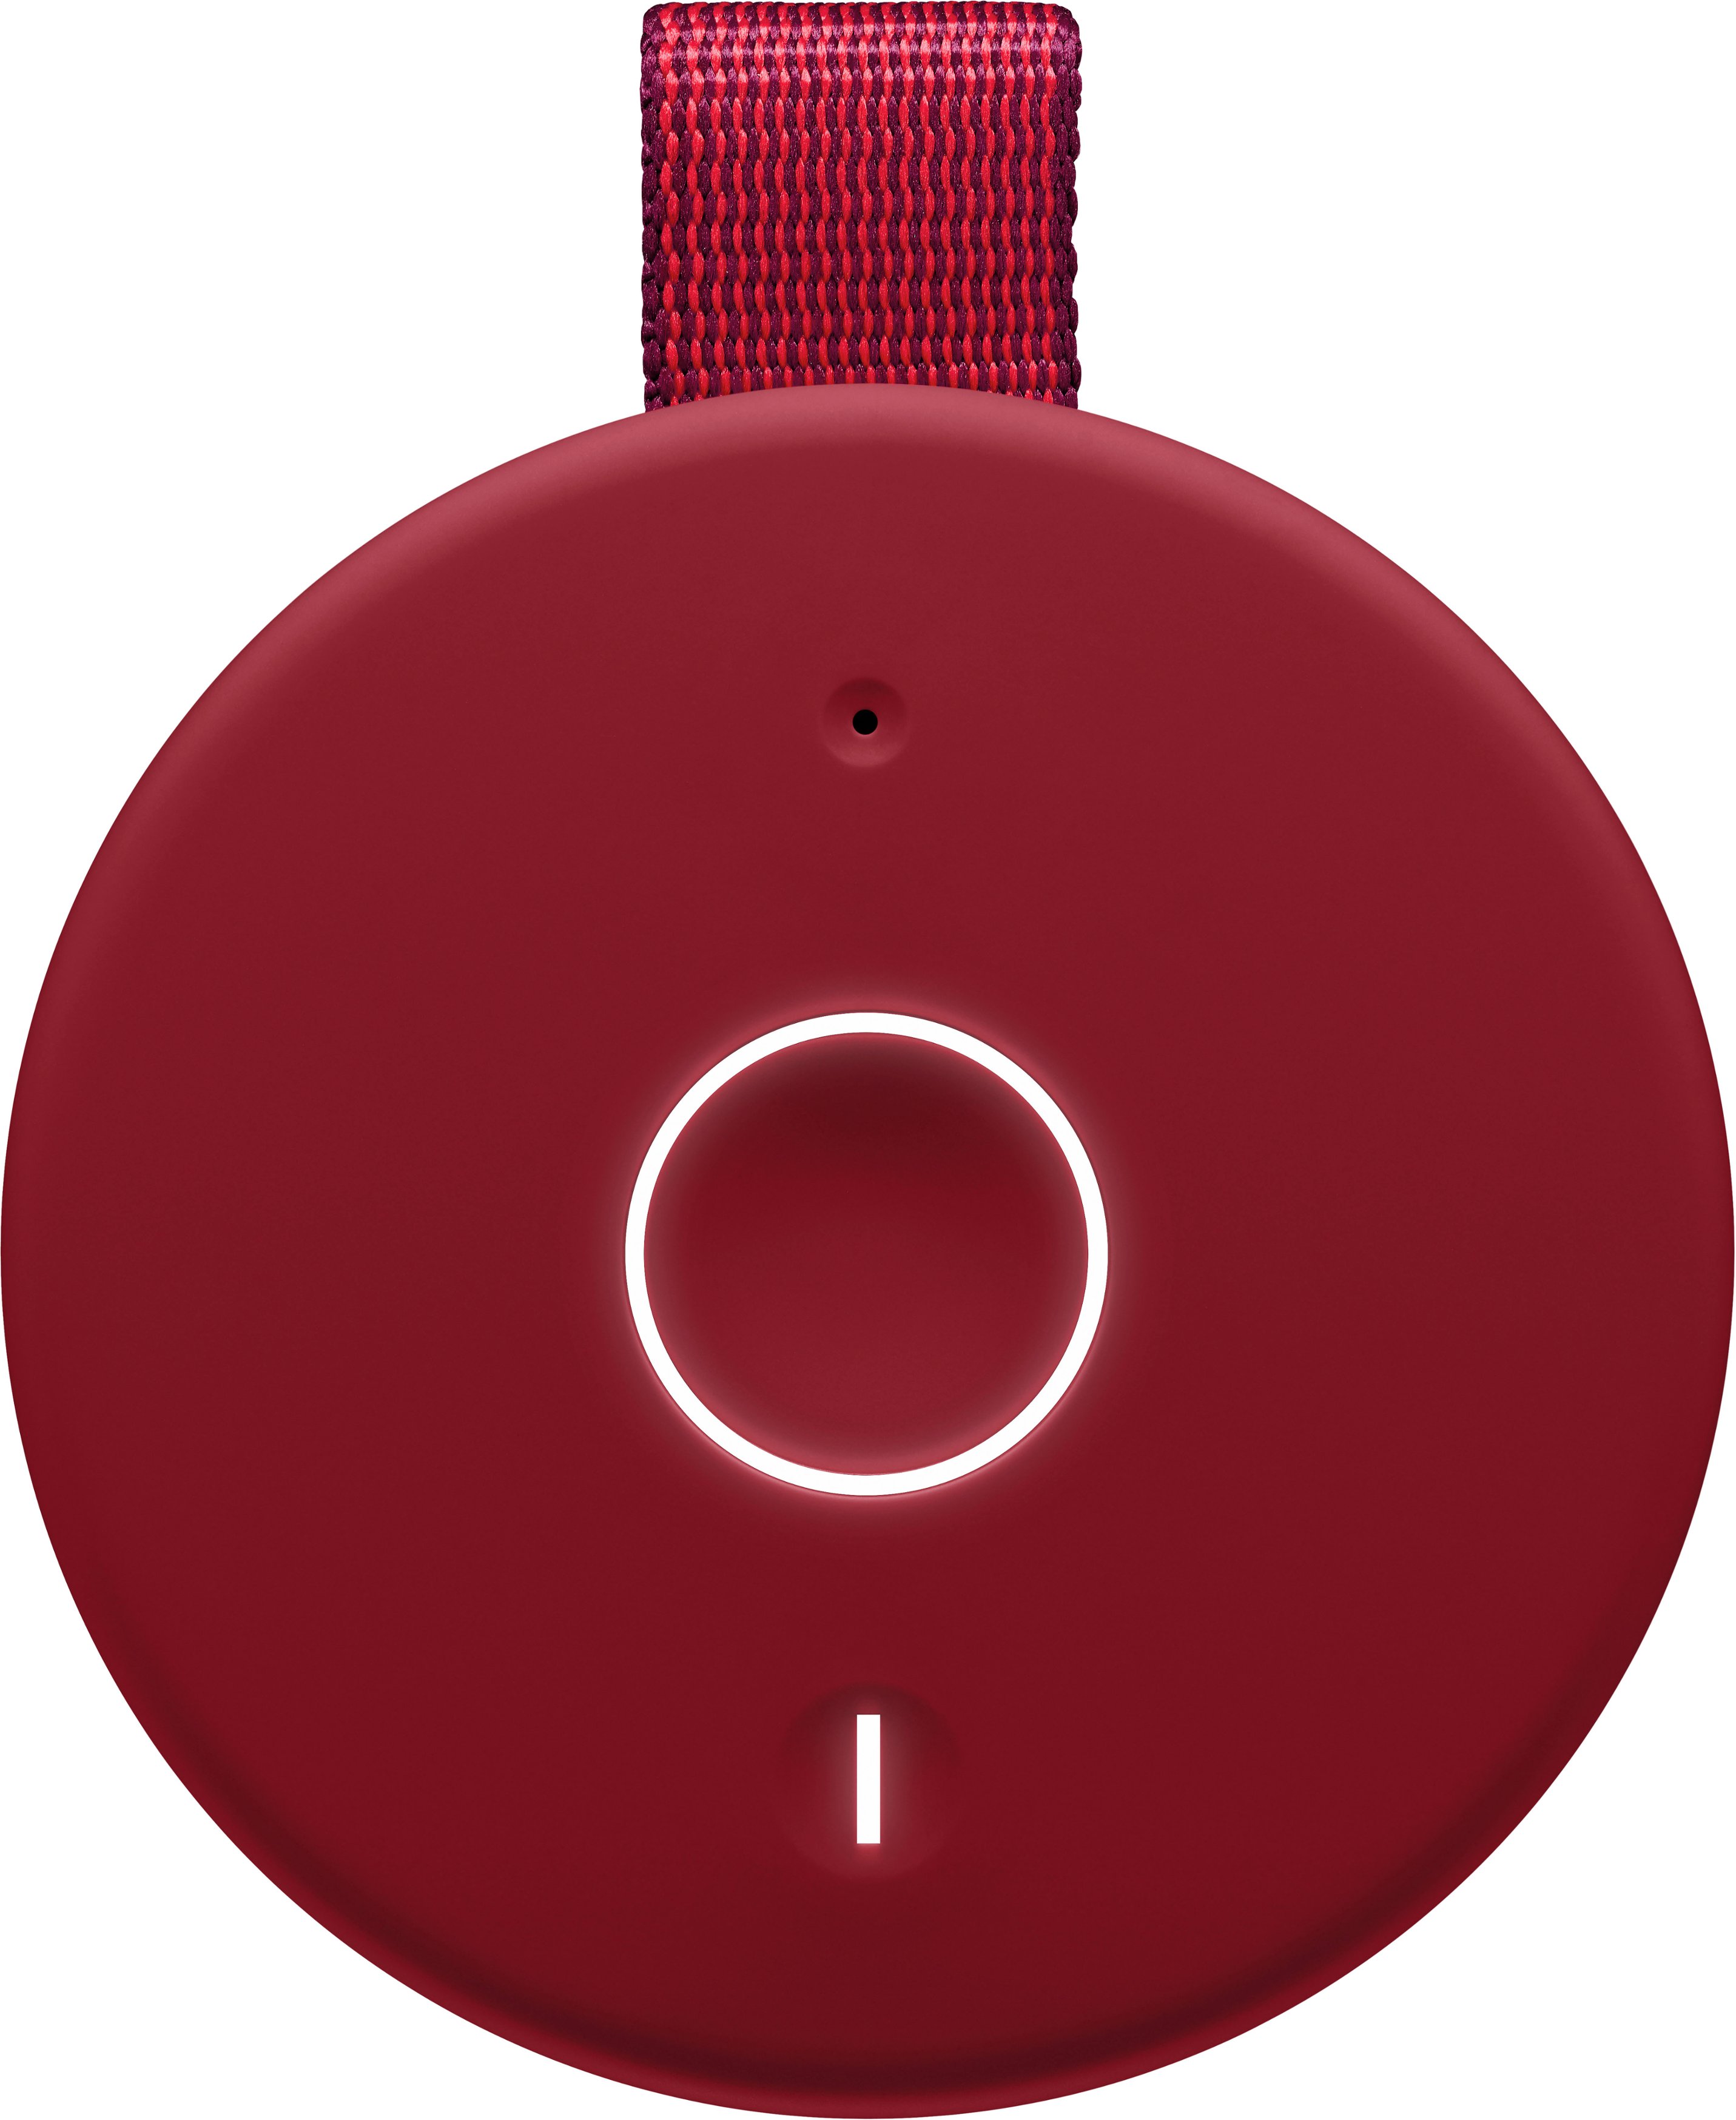 Ultimate Ears MEGABOOM 3 Portable Bluetooth Speaker 984-001394